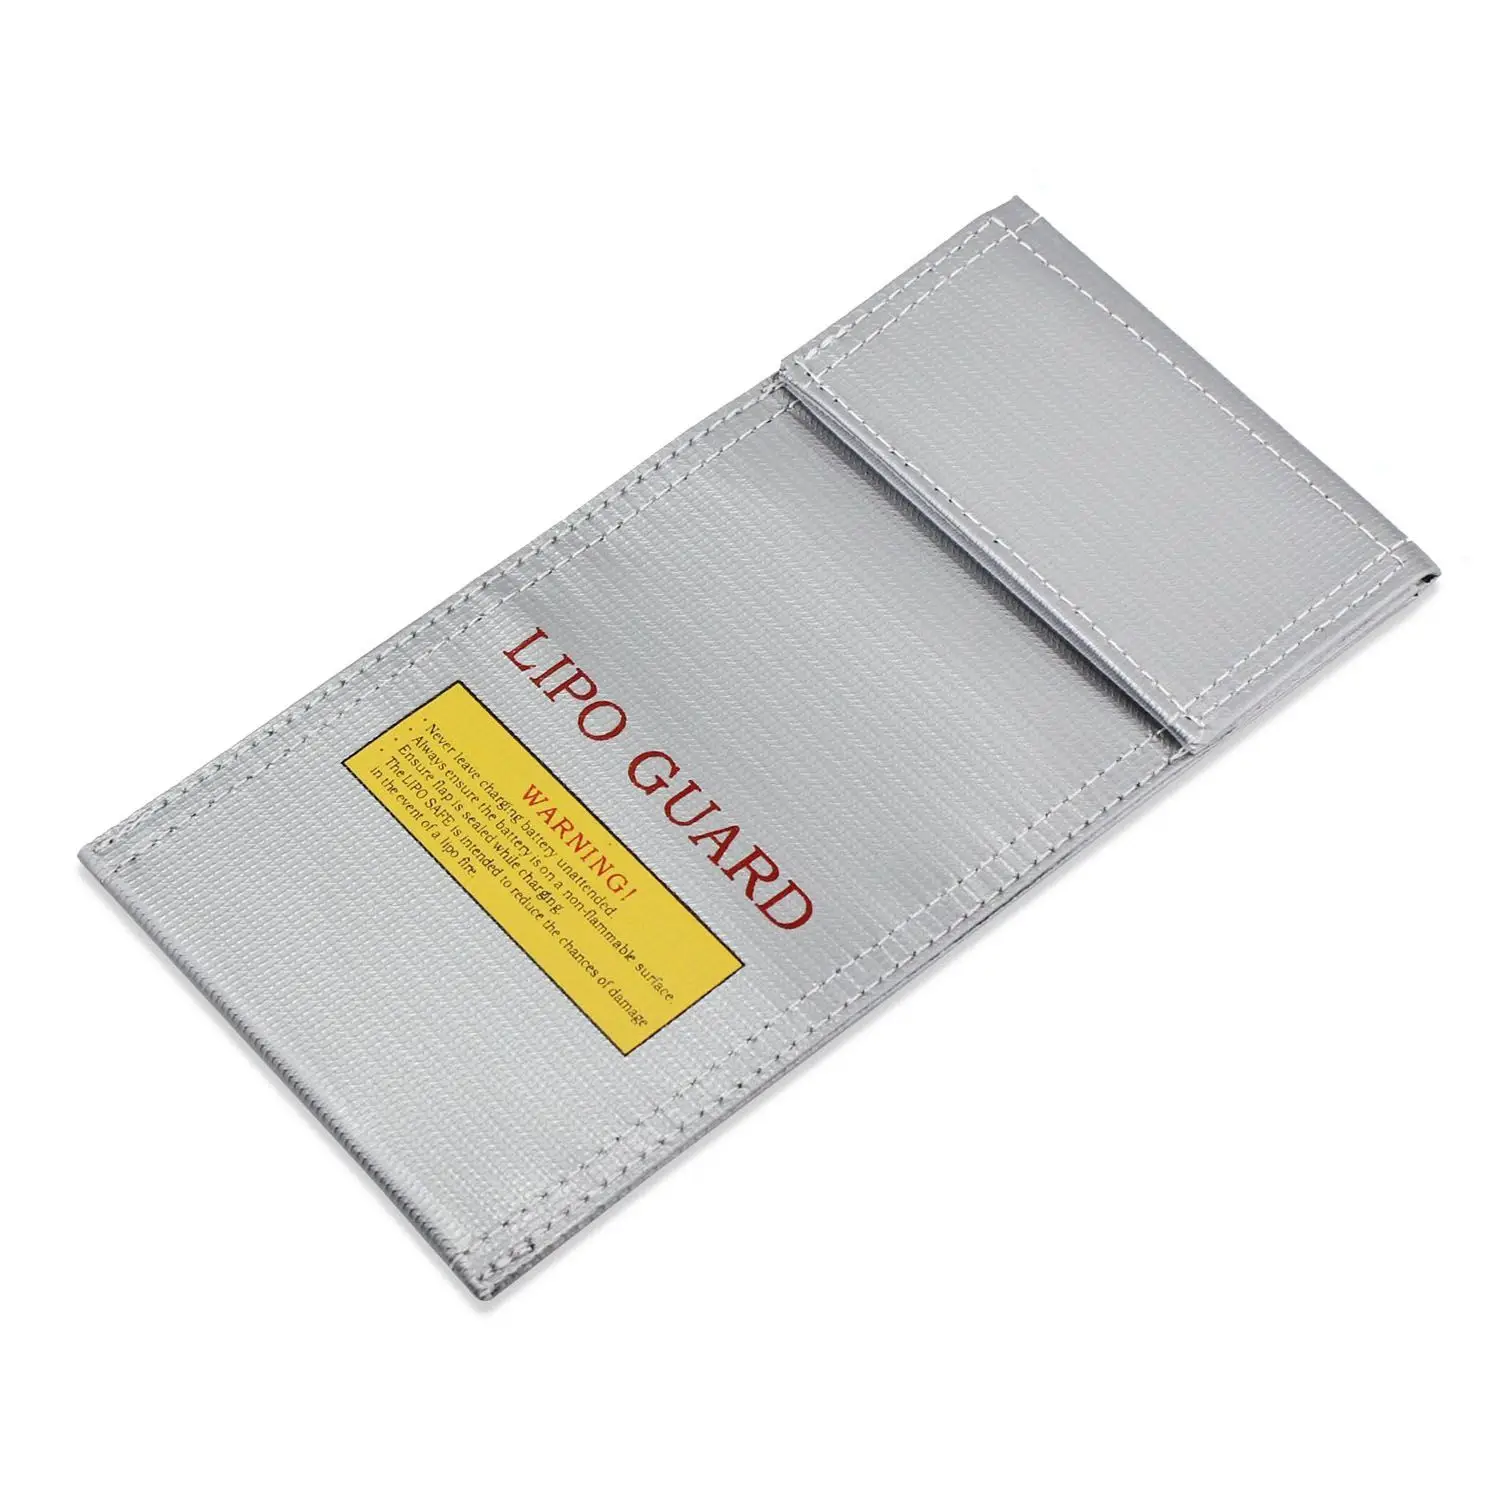 LiPo Защита аккумулятора мешок огнестойкий защитный мешок зарядное устройство мешок (10x20 см)